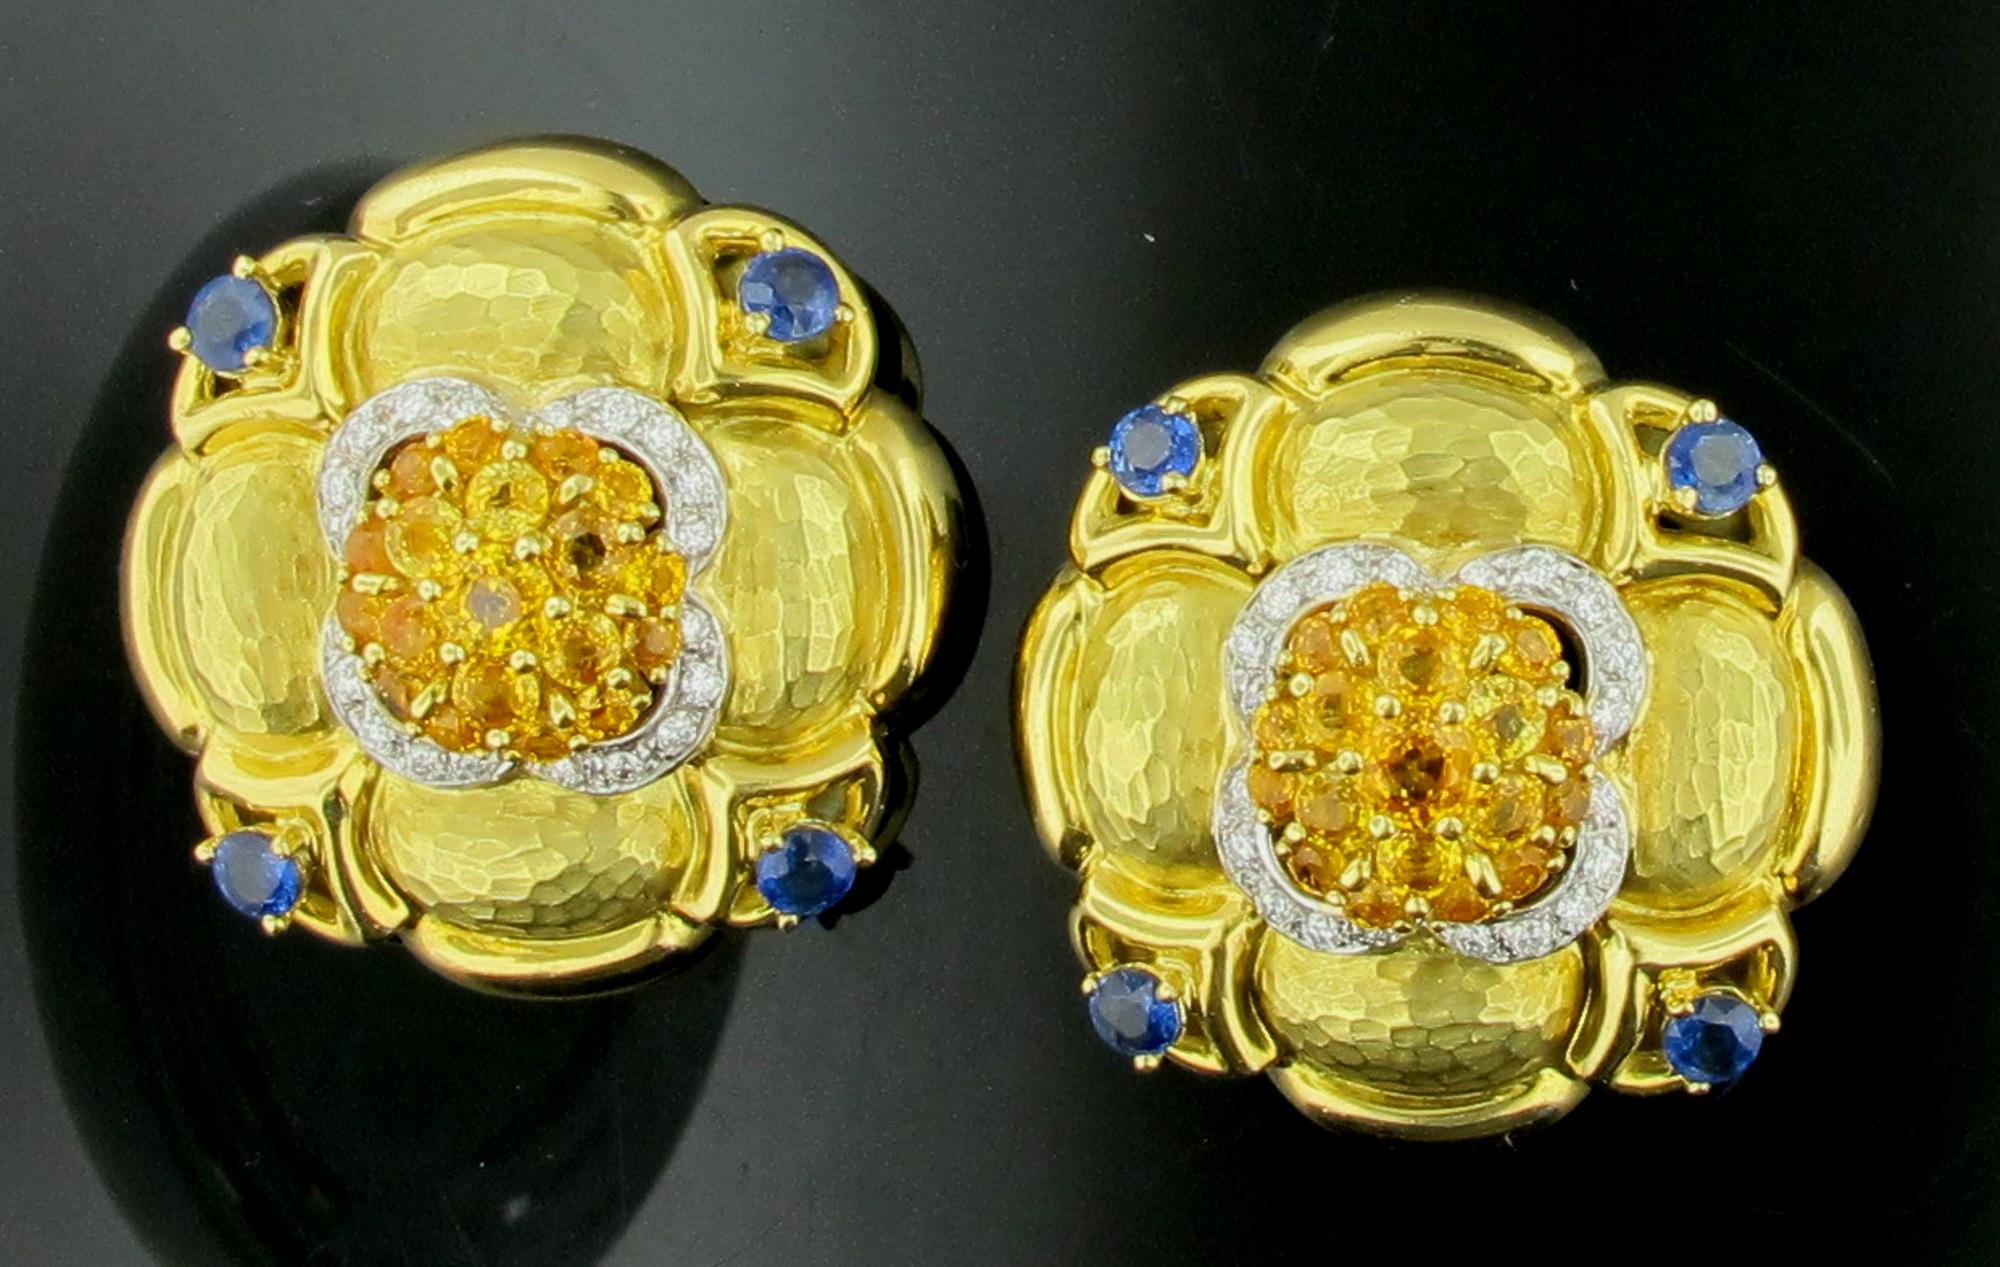 In 18 Karat gehämmertem Gelbgold sind 38 natürliche gelbe Saphire mit einem Gesamtgewicht von ca. 7,00 Karat gefasst,  8 natürliche blaue Saphire mit einem Gesamtgewicht von etwa 1,50 Karat und 40 runde Diamanten im Brillantschliff mit einem Gewicht